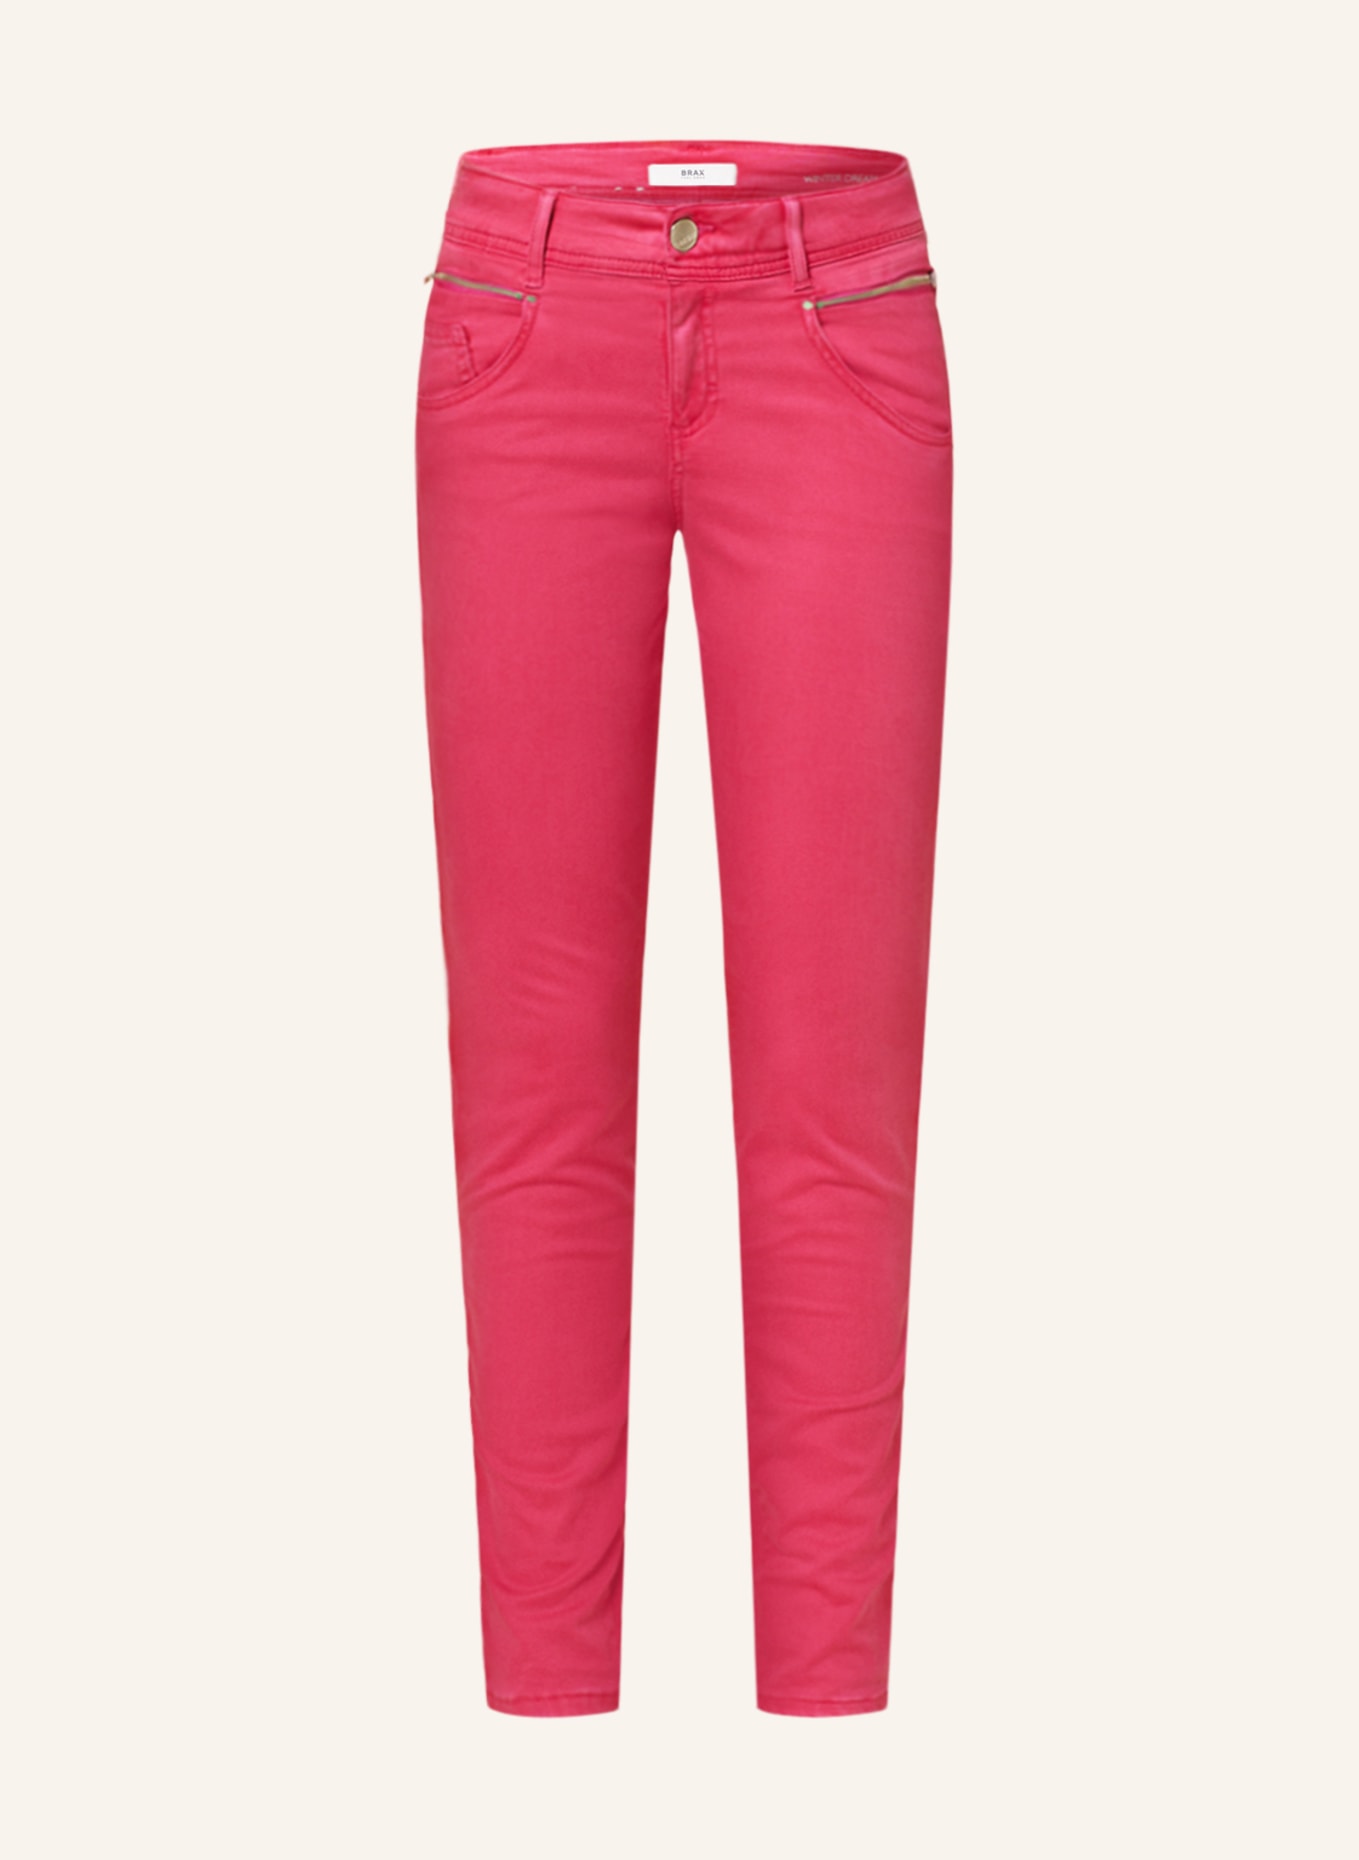 BRAX Skinny Jeans SHAKIRA, Farbe: 87 ORCHID (Bild 1)